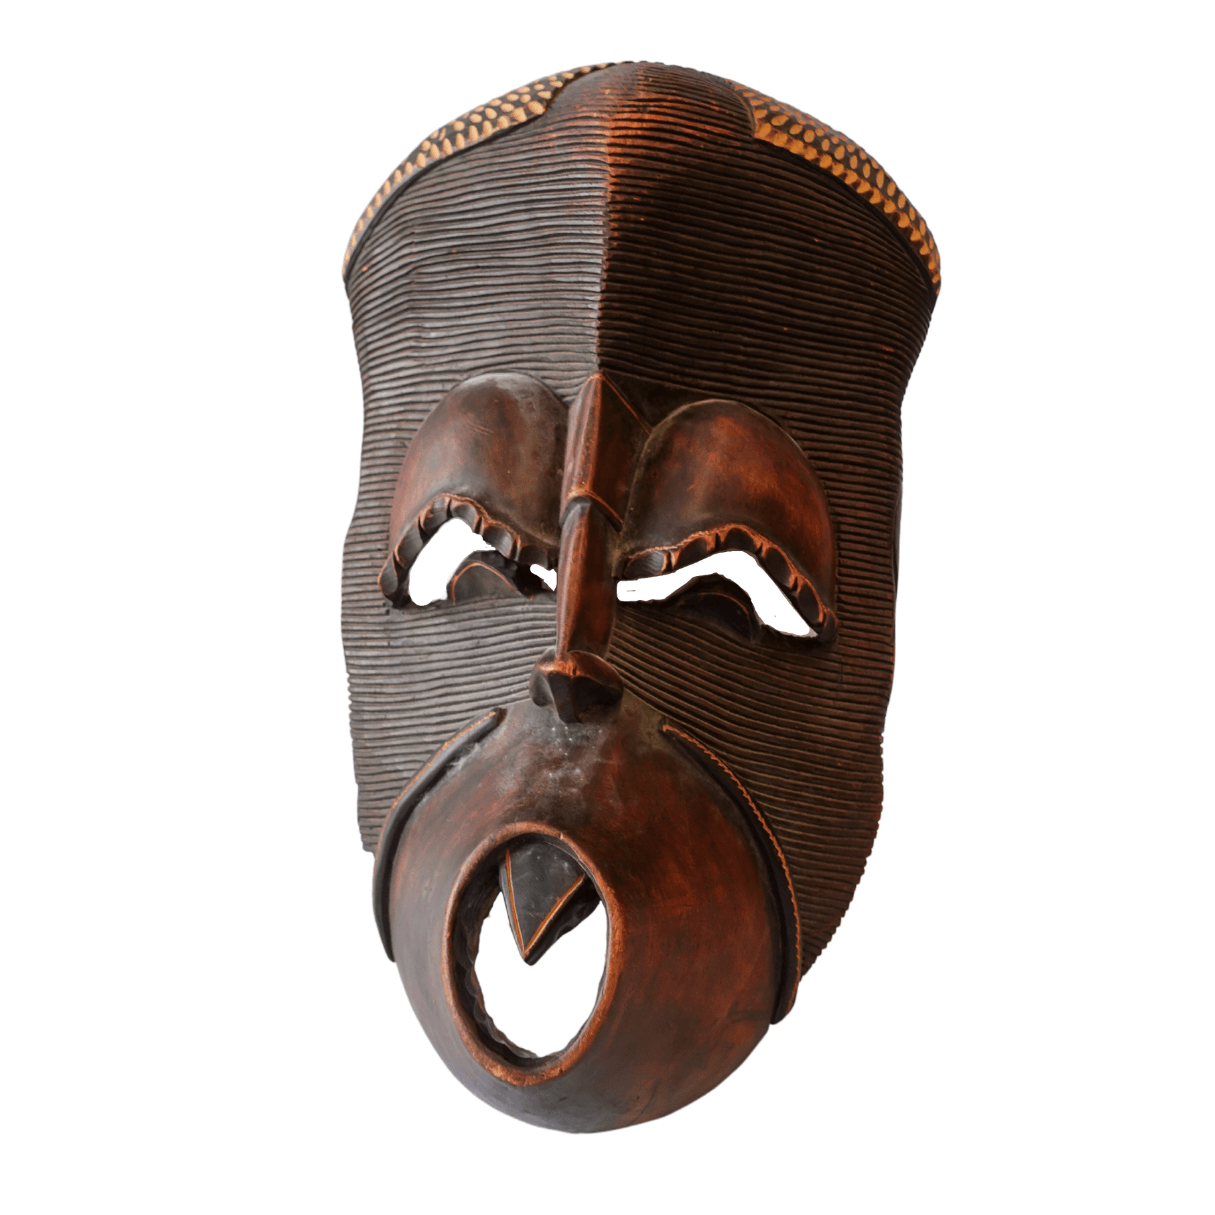 Escultura de Máscara Africana Vintage da Angola